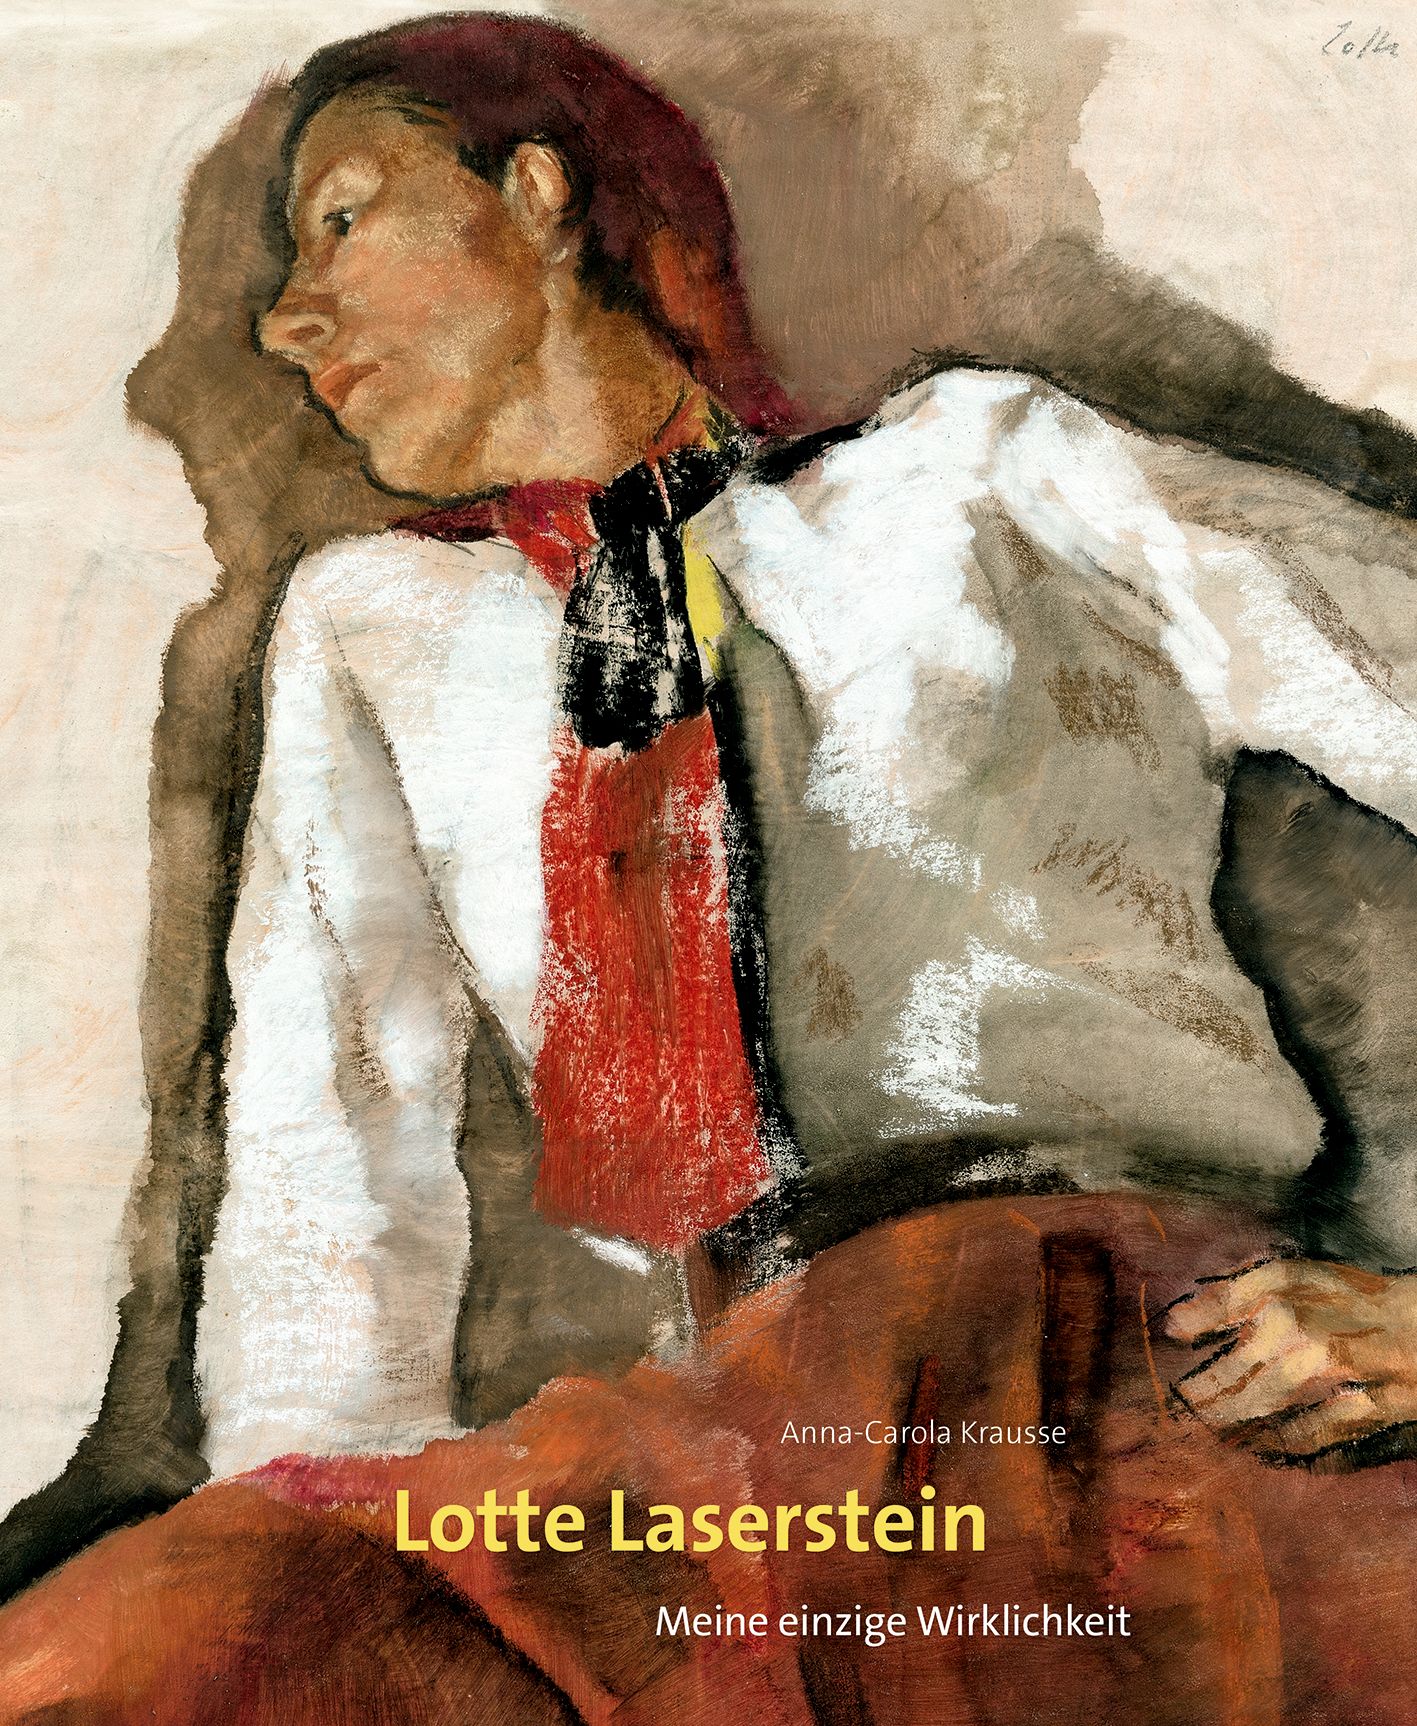 Zum Werk und zur Wiederentdeckung von Lotte Laserstein